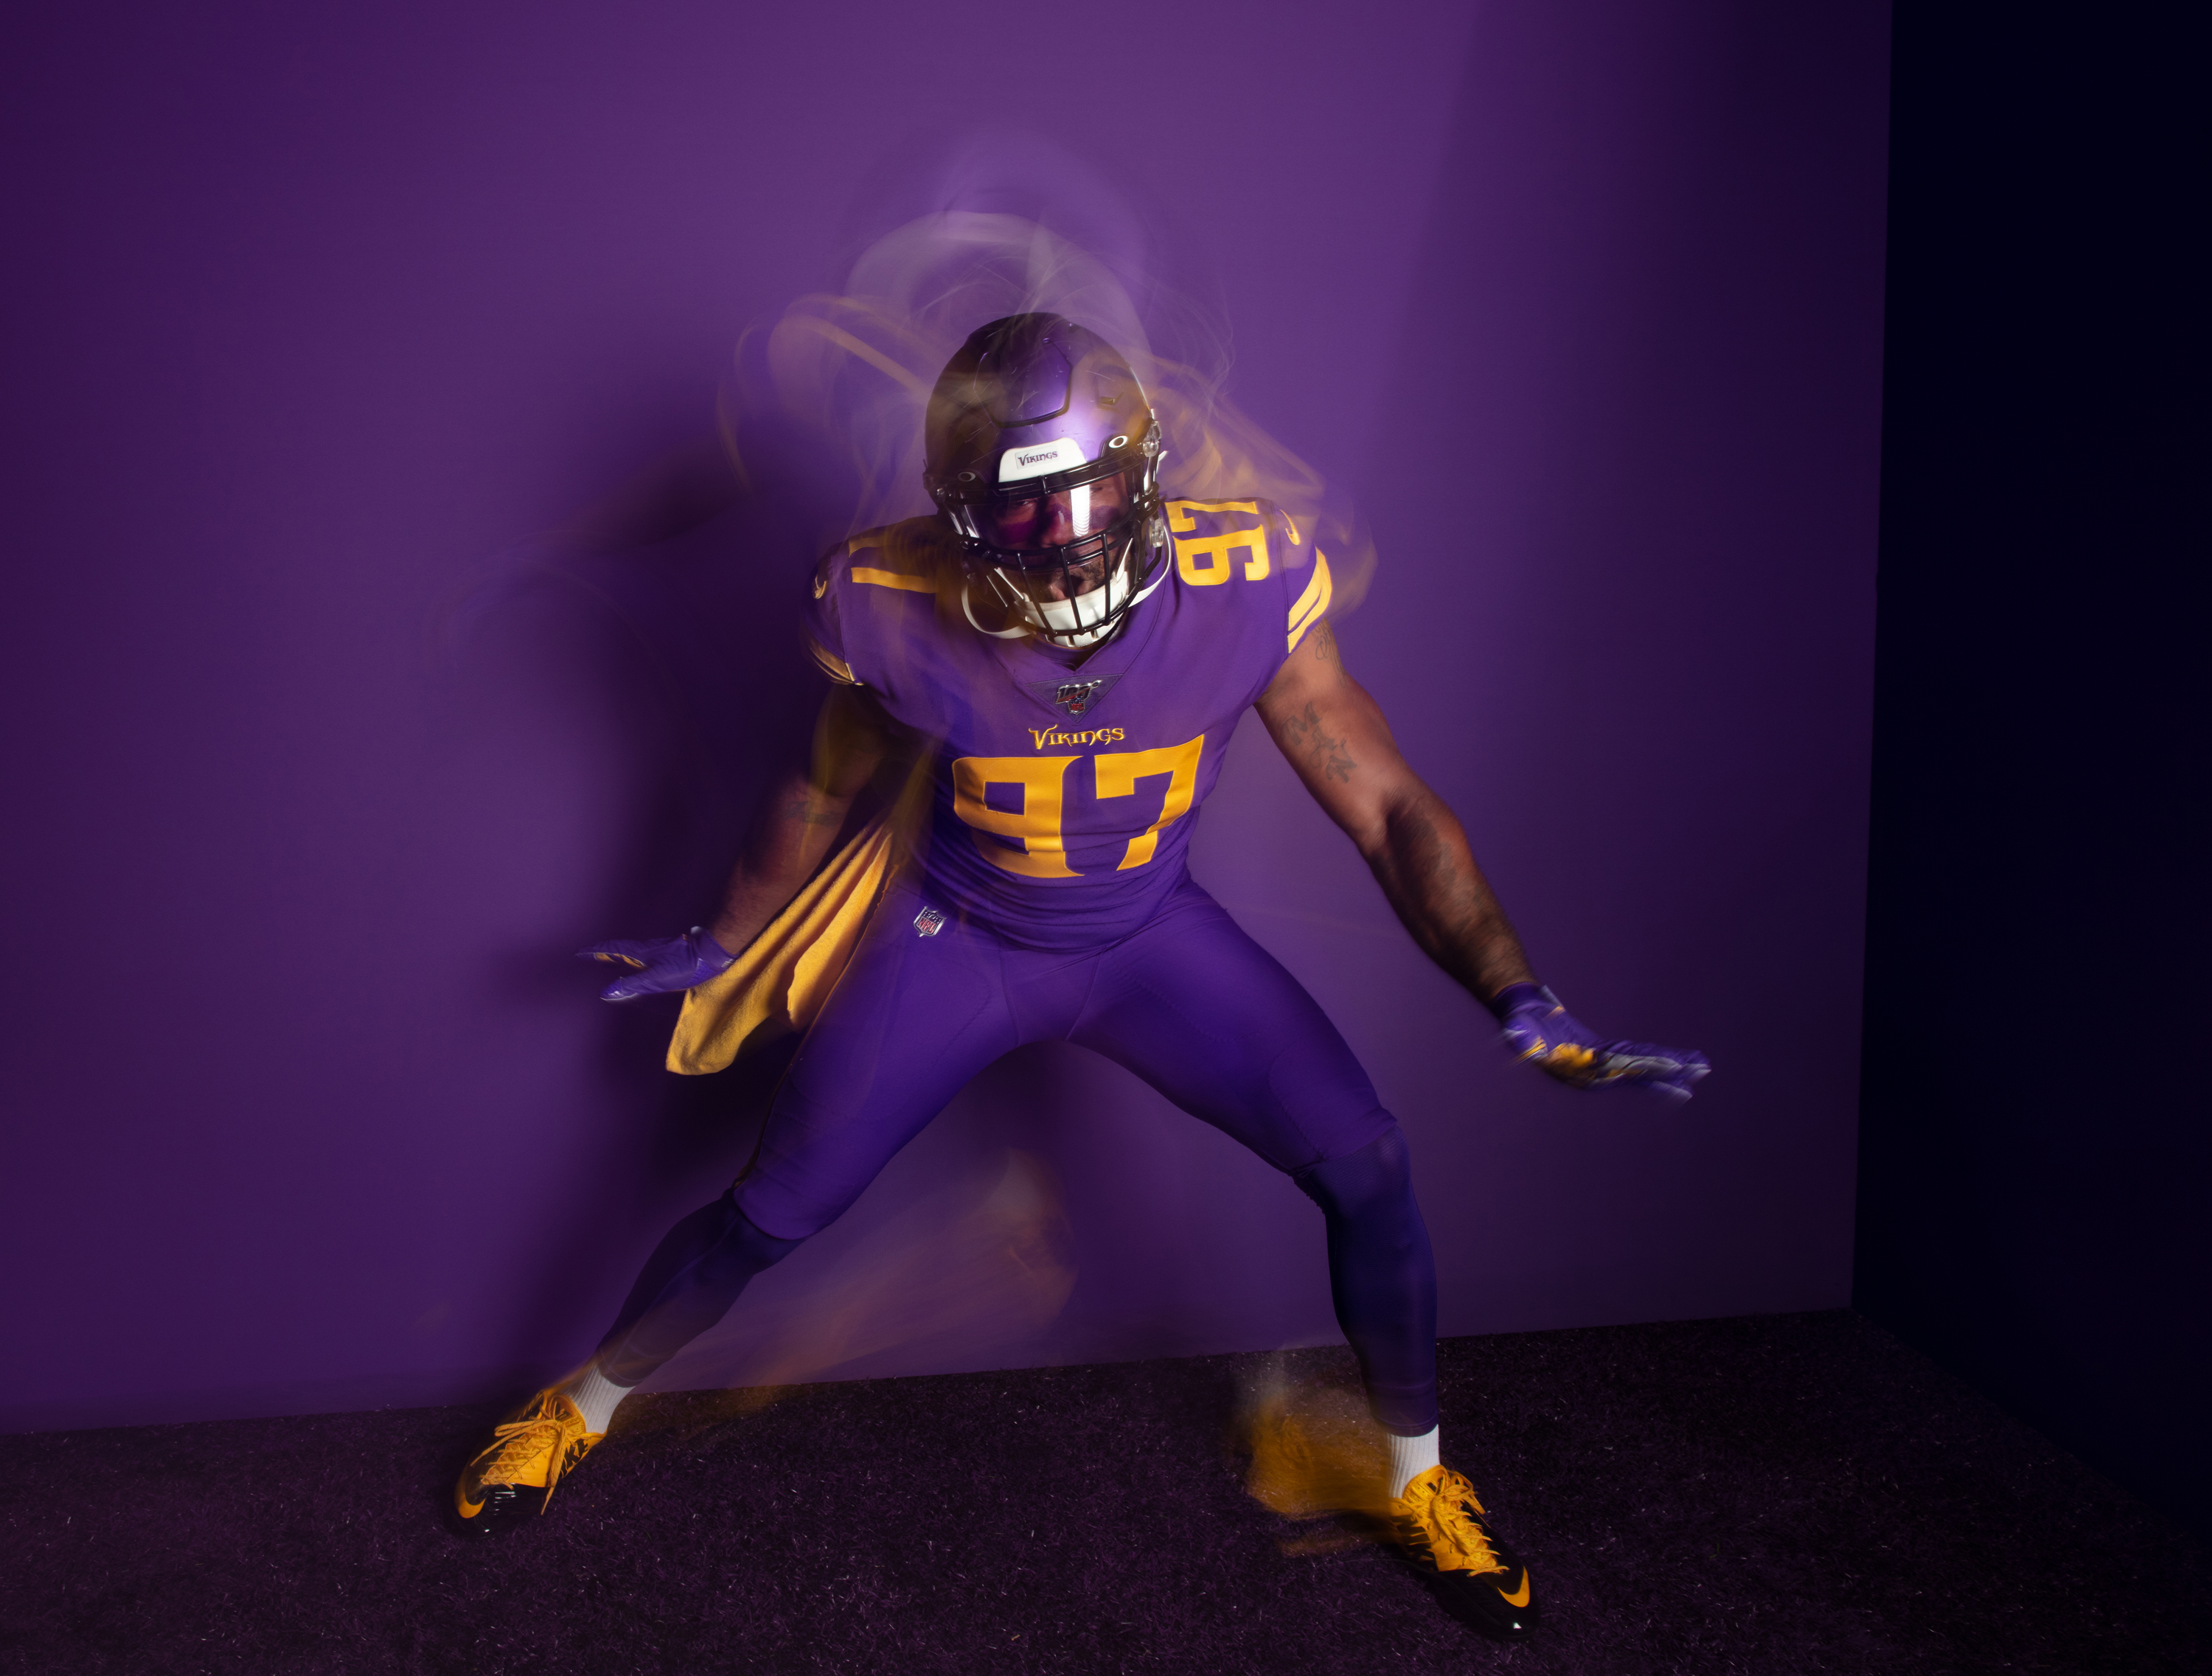 vikings primetime purple jerseys